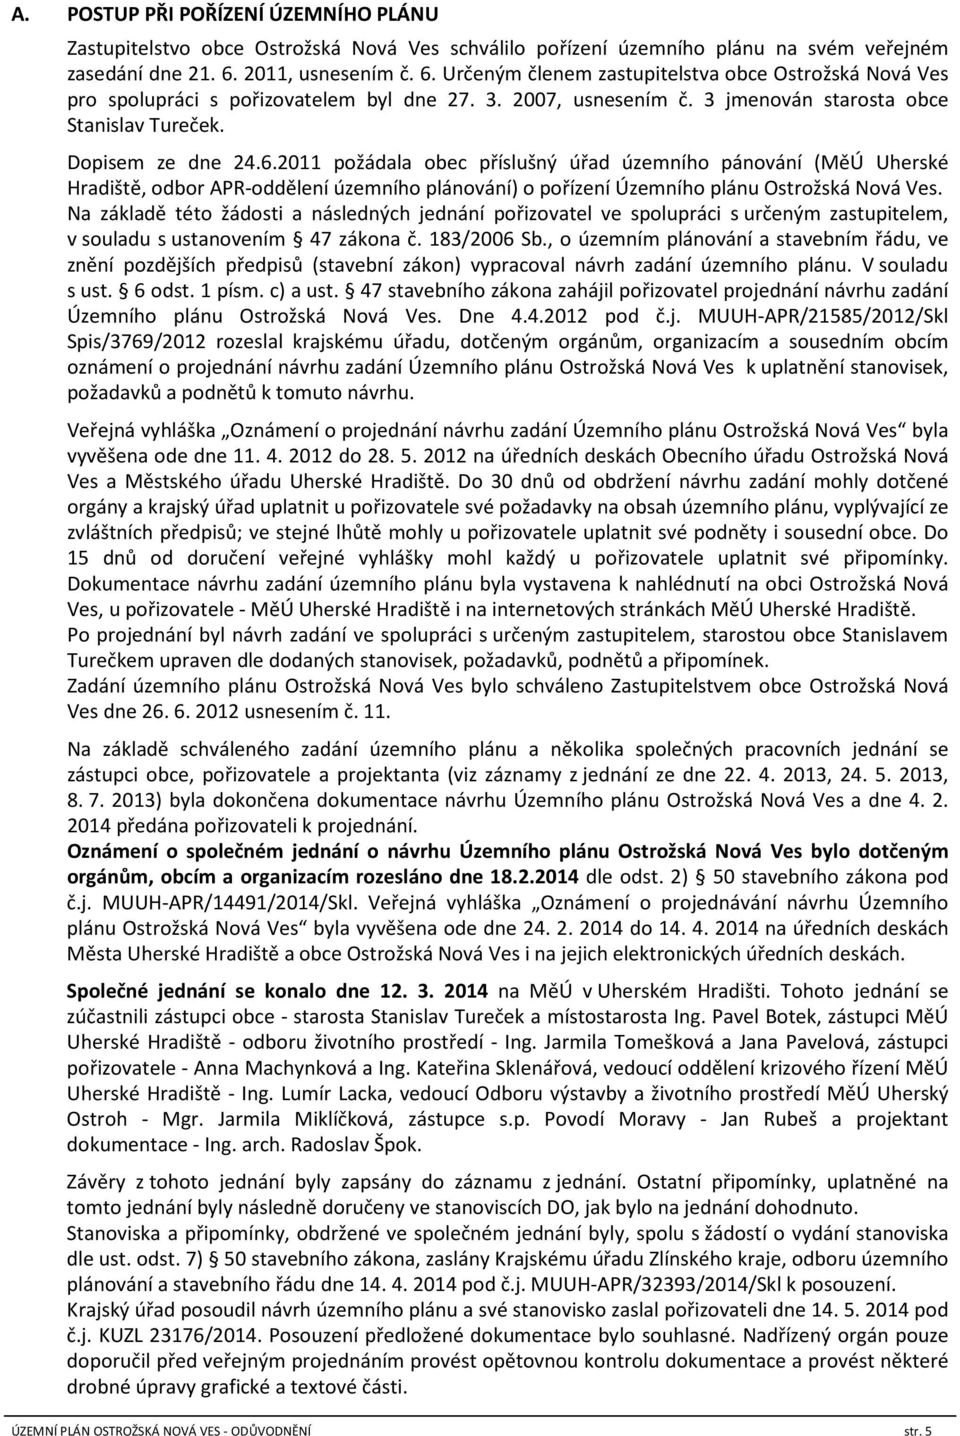 Dopisem ze dne 24.6.2011 požádala obec příslušný úřad územního pánování (MěÚ Uherské Hradiště, odbor APR-oddělení územního plánování) o pořízení Územního plánu Ostrožská Nová Ves.